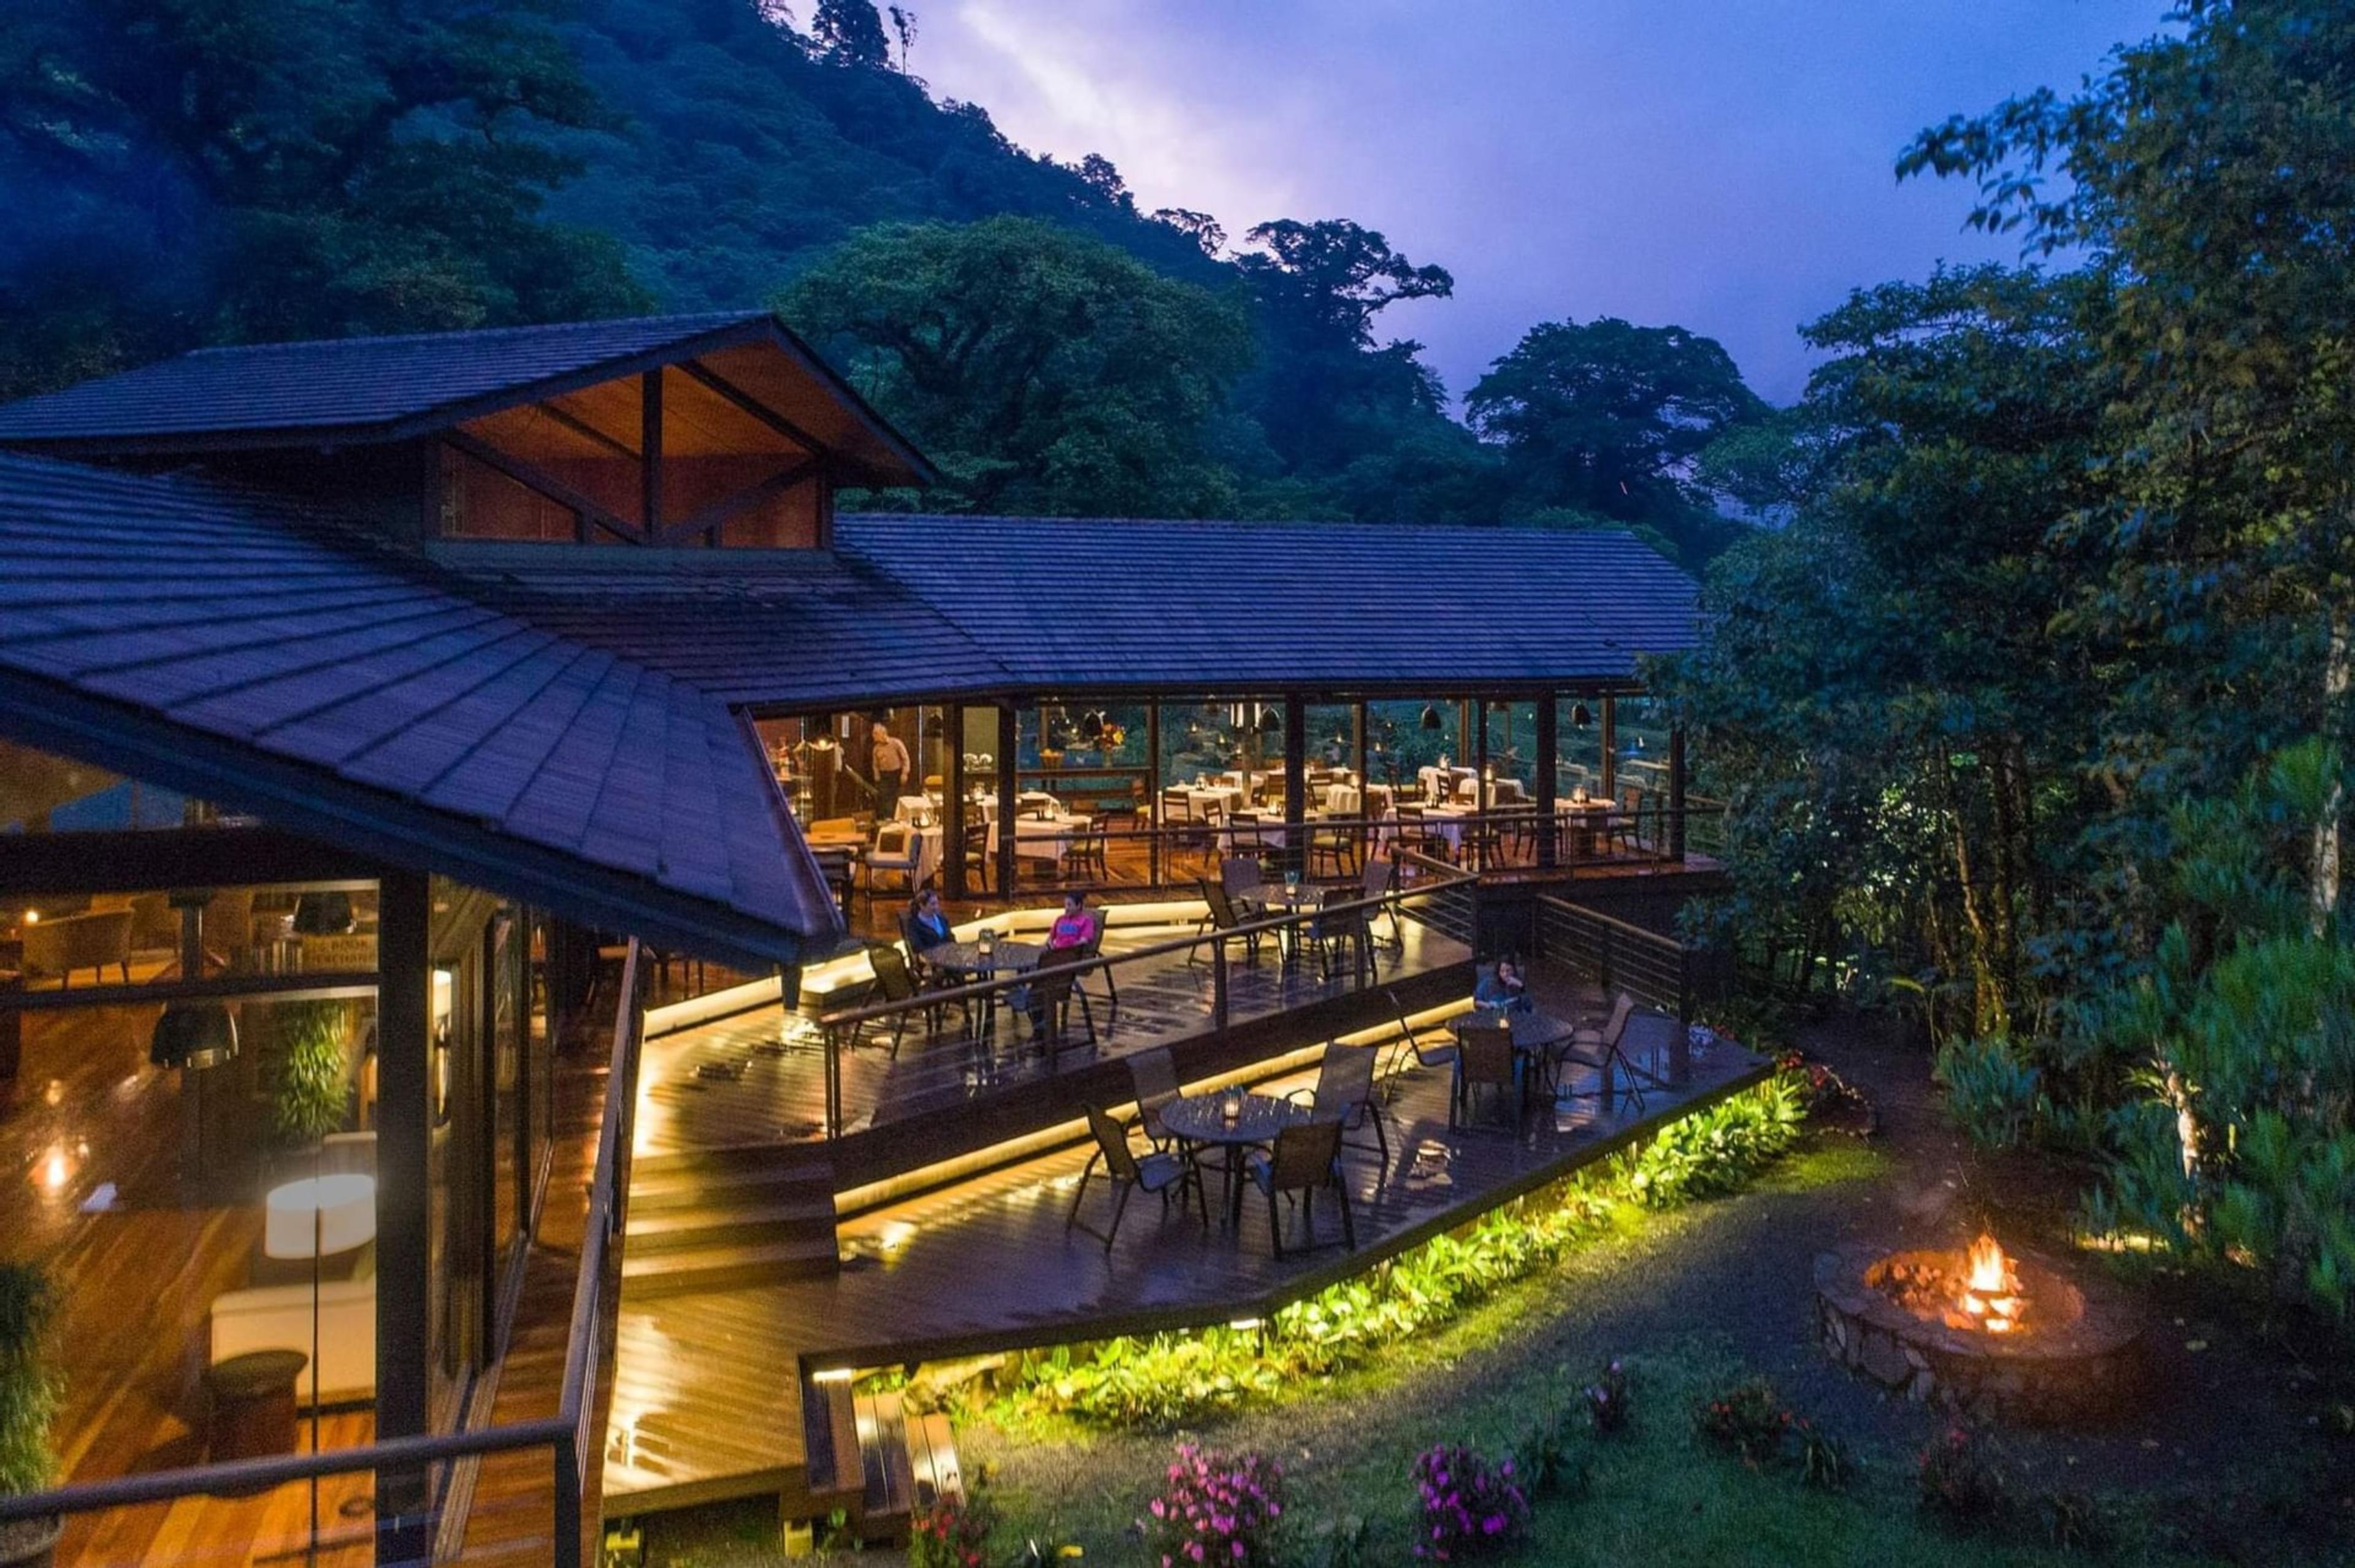 El Silencio Lodge and Spa - Bajos del Toro, Costa Rica